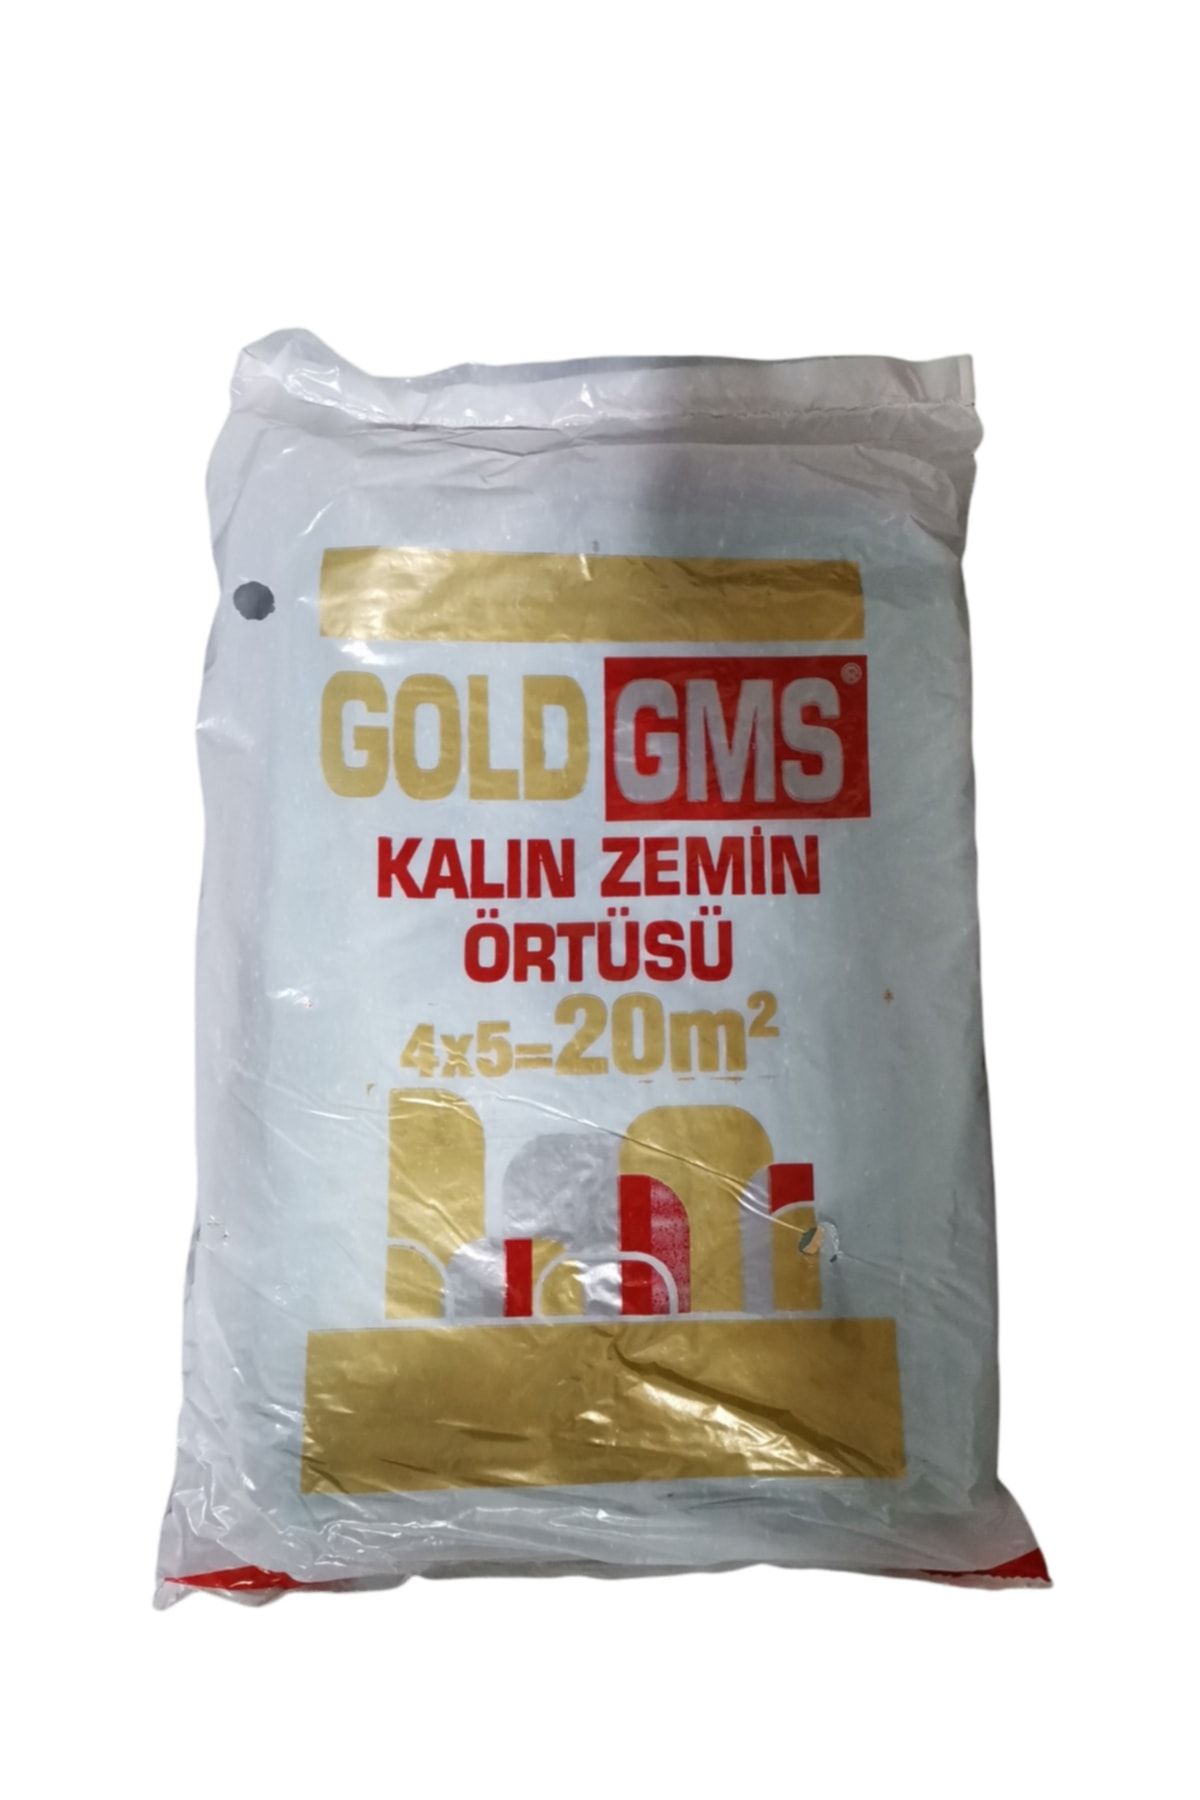 Gms Gold Boya Badana Örtüsü Koruyucu Kalın Zemin Örtüsü 30 M2 ( 4 X 7,5 M.)